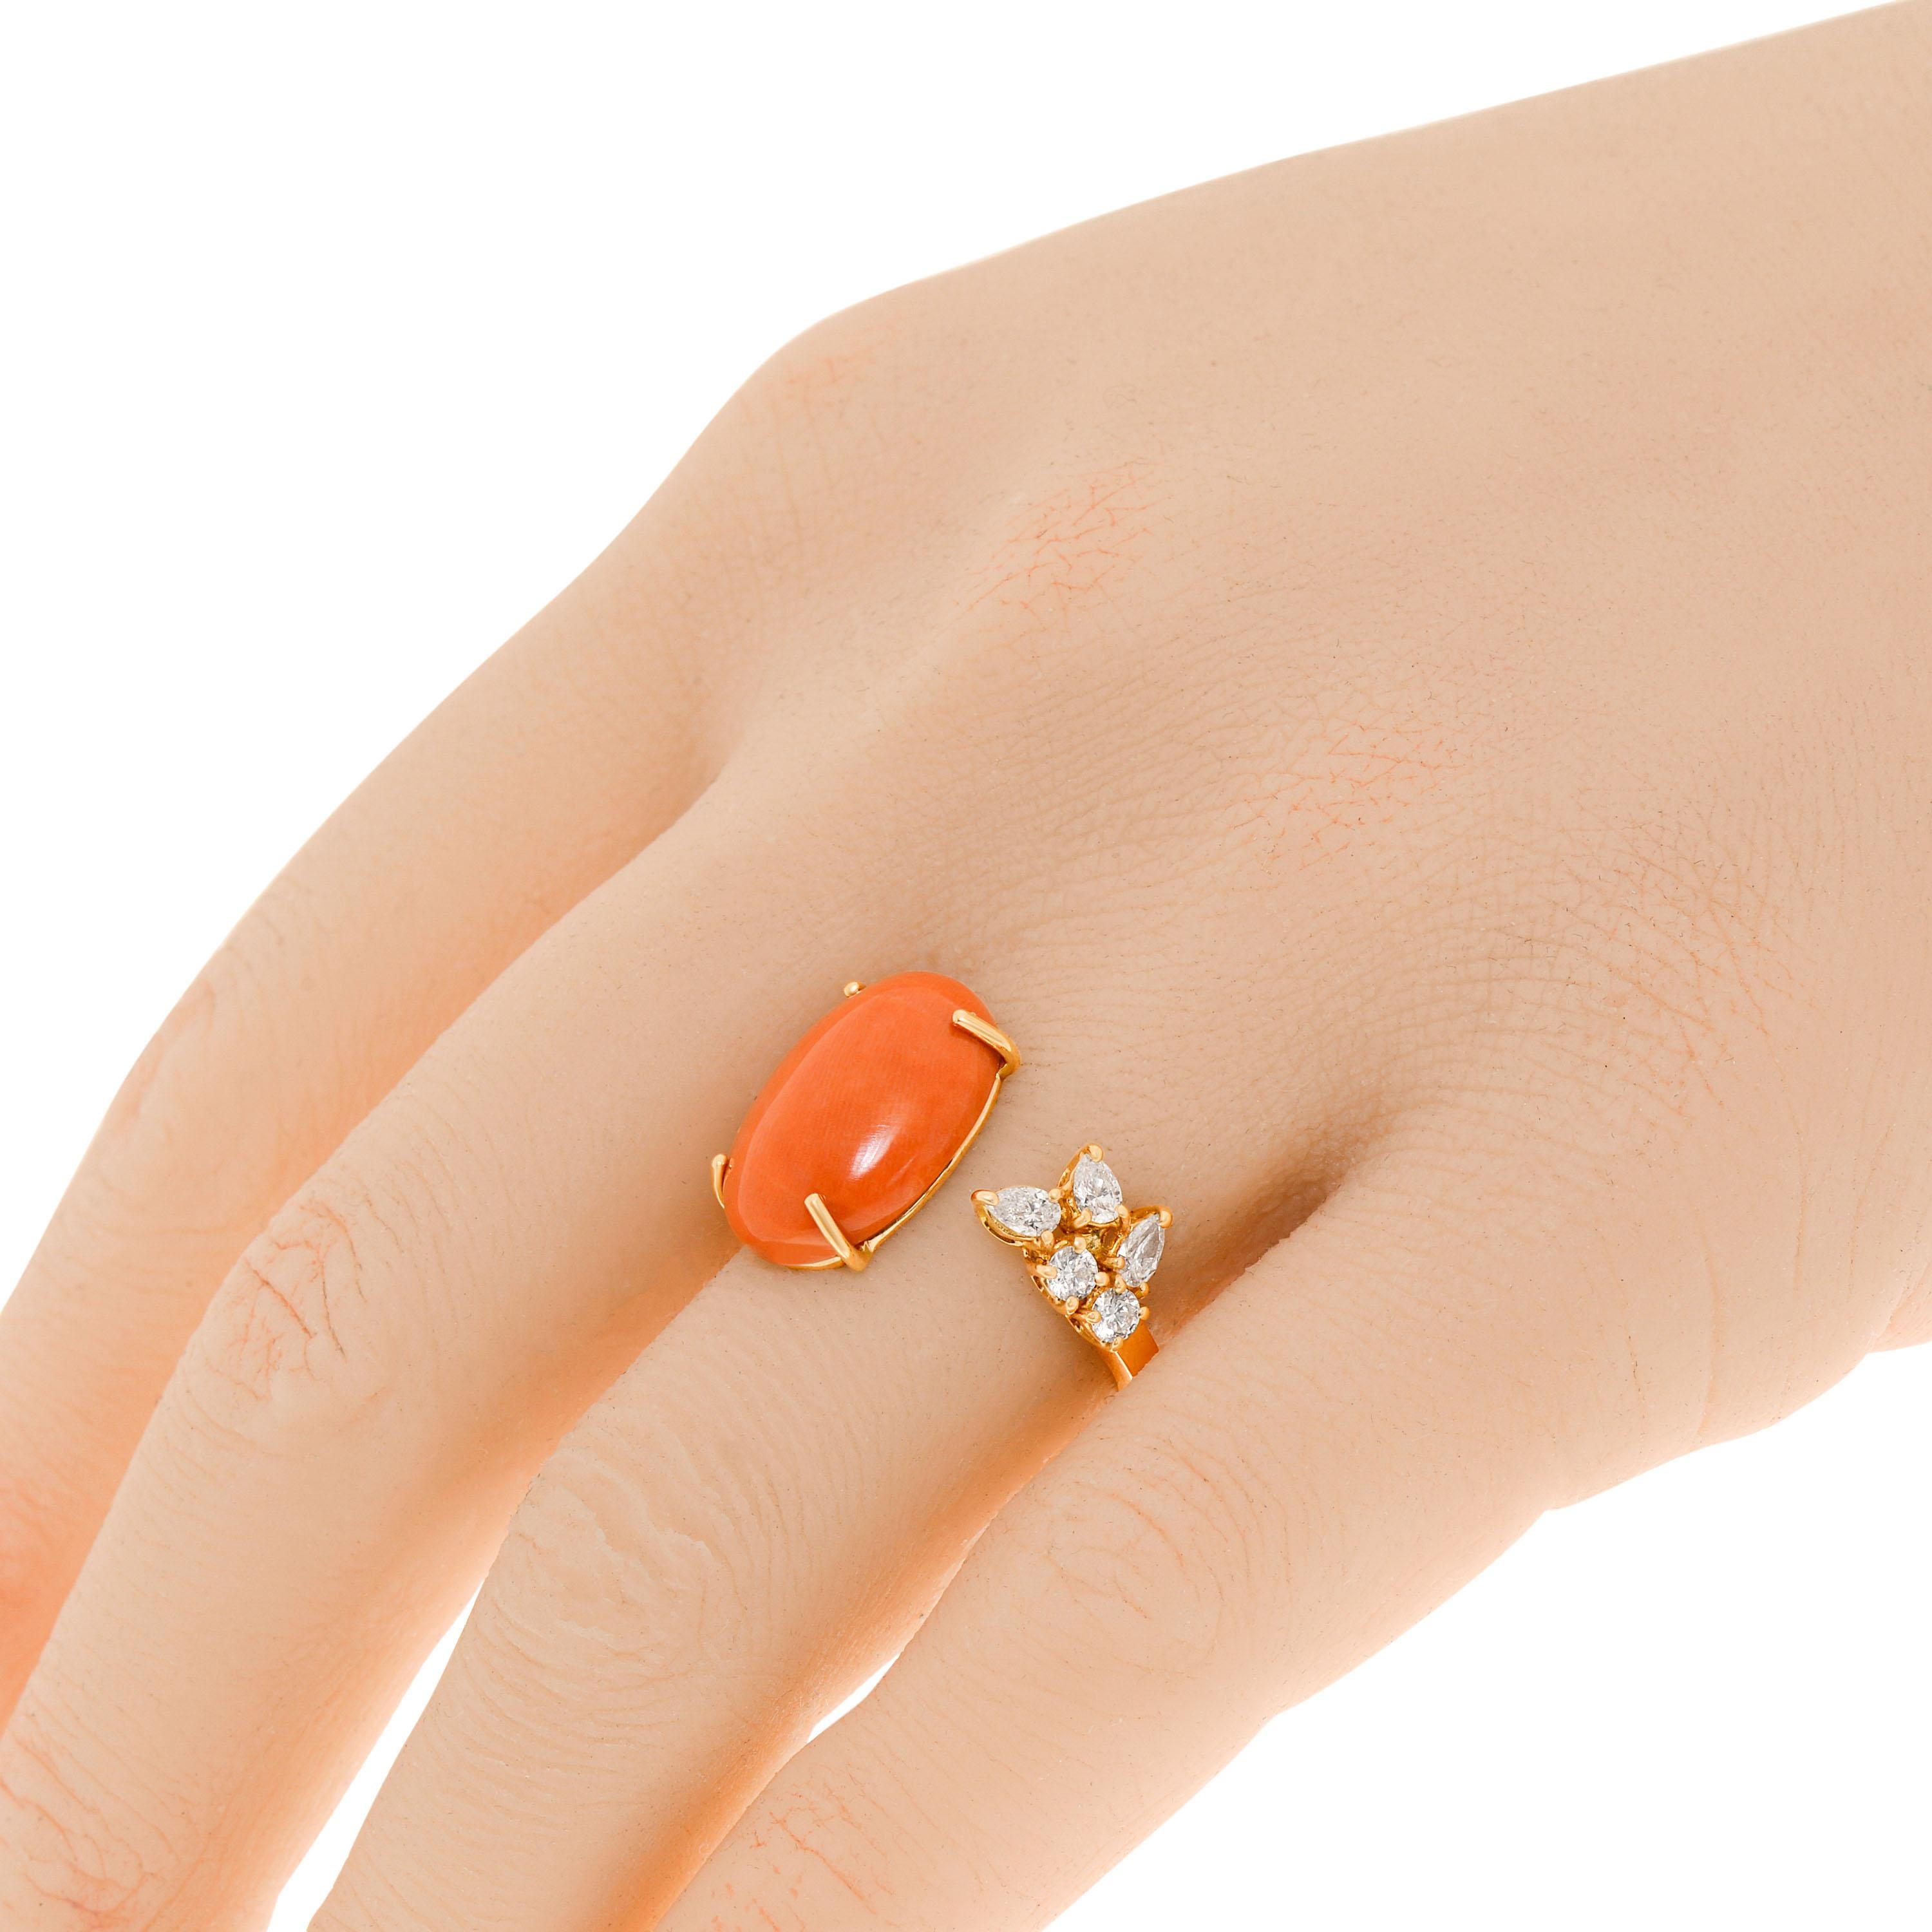 ZYDO 18K Rose Gold Edelstein Ring verfügt über eine Koralle Edelstein mit 0,36ct. tw. clustered Diamanten. Die Ringgröße ist 6,5 (53,1). Die Dekoration ist 5/8